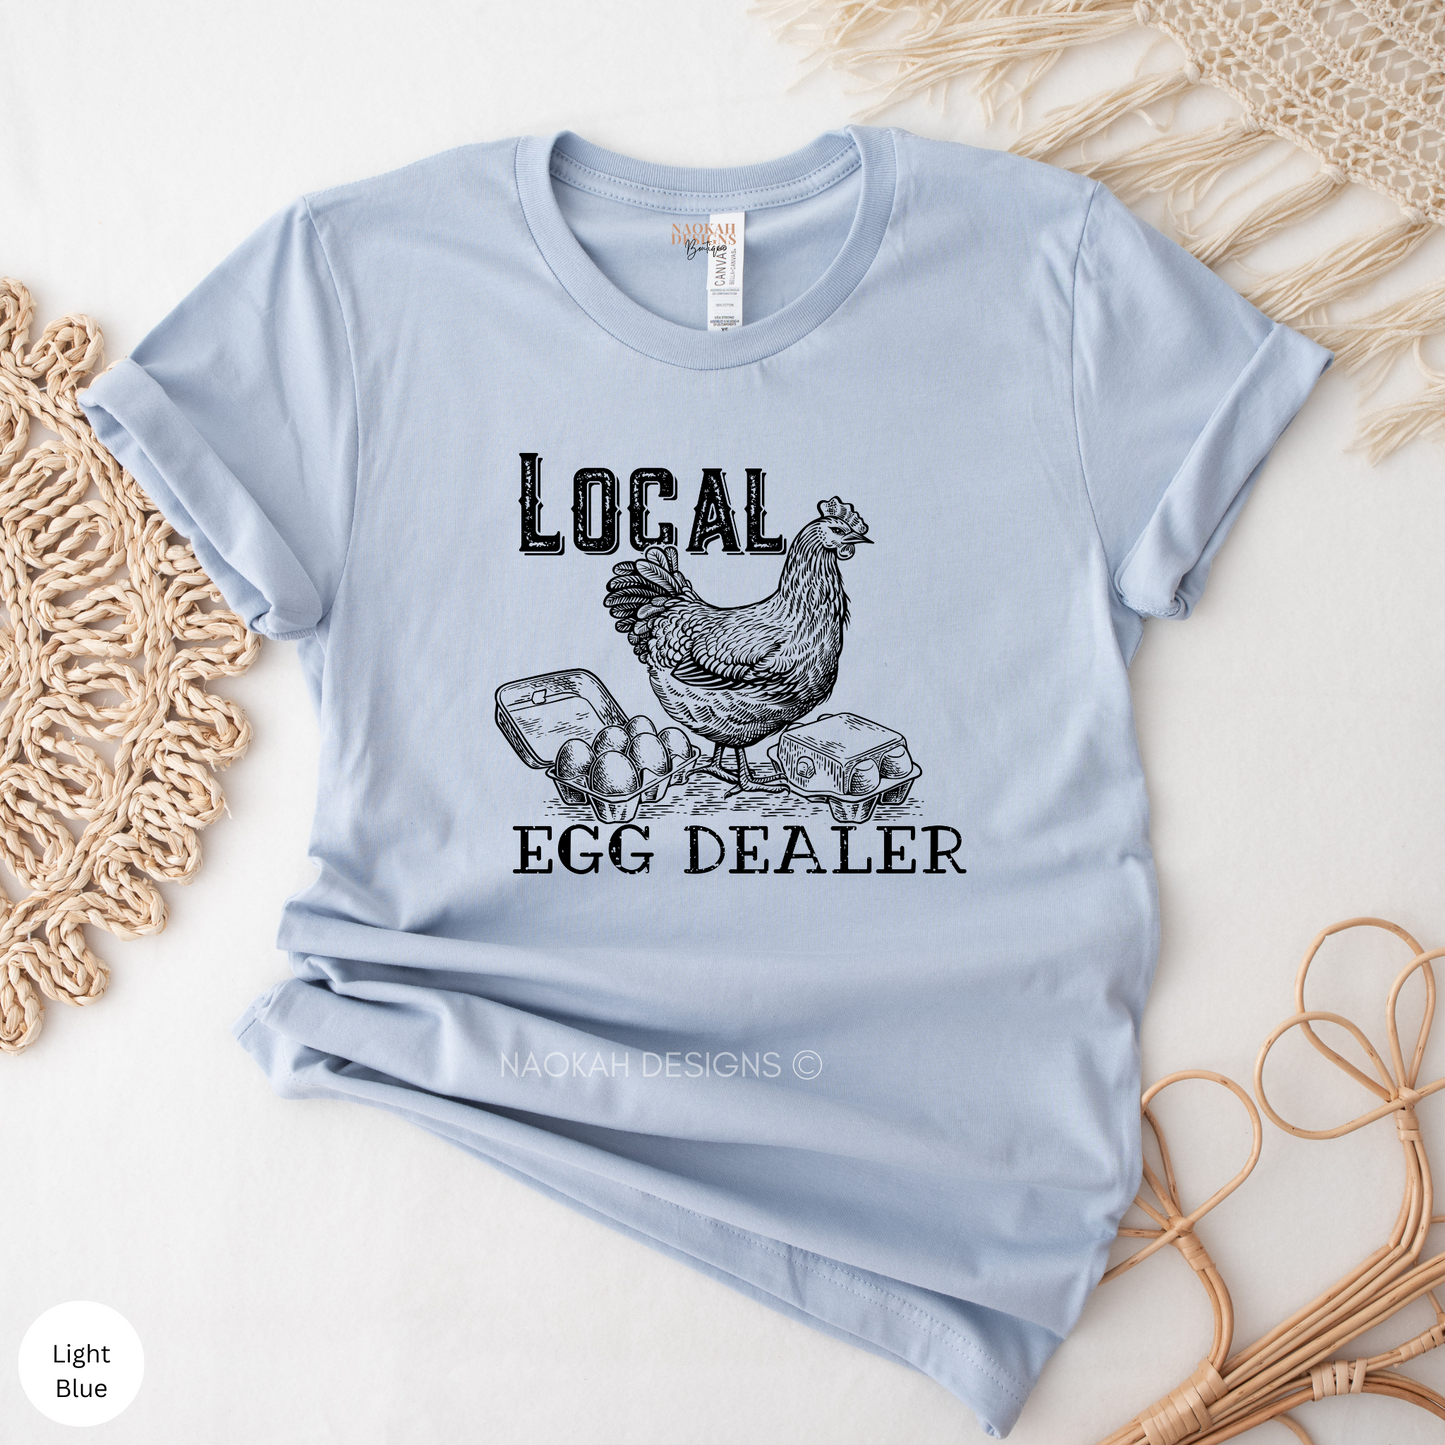 local egg dealer shirt, funny chicken shirt, hen shirt, farmers shirt, chicken tee, support local farmer shirt, crazy chicken lady shirt